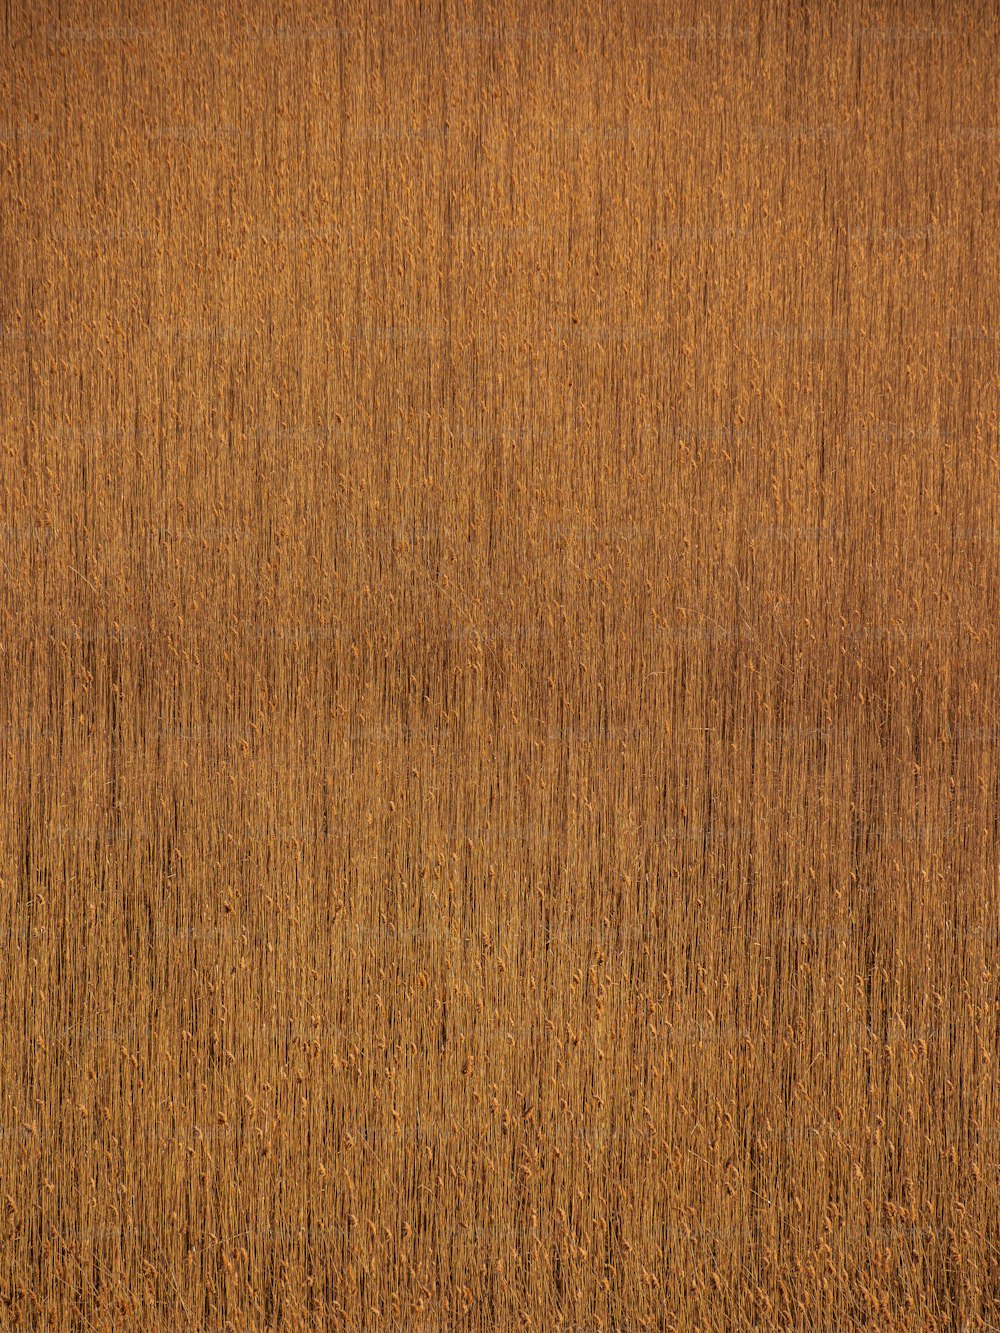 una superficie de madera con un color marrón